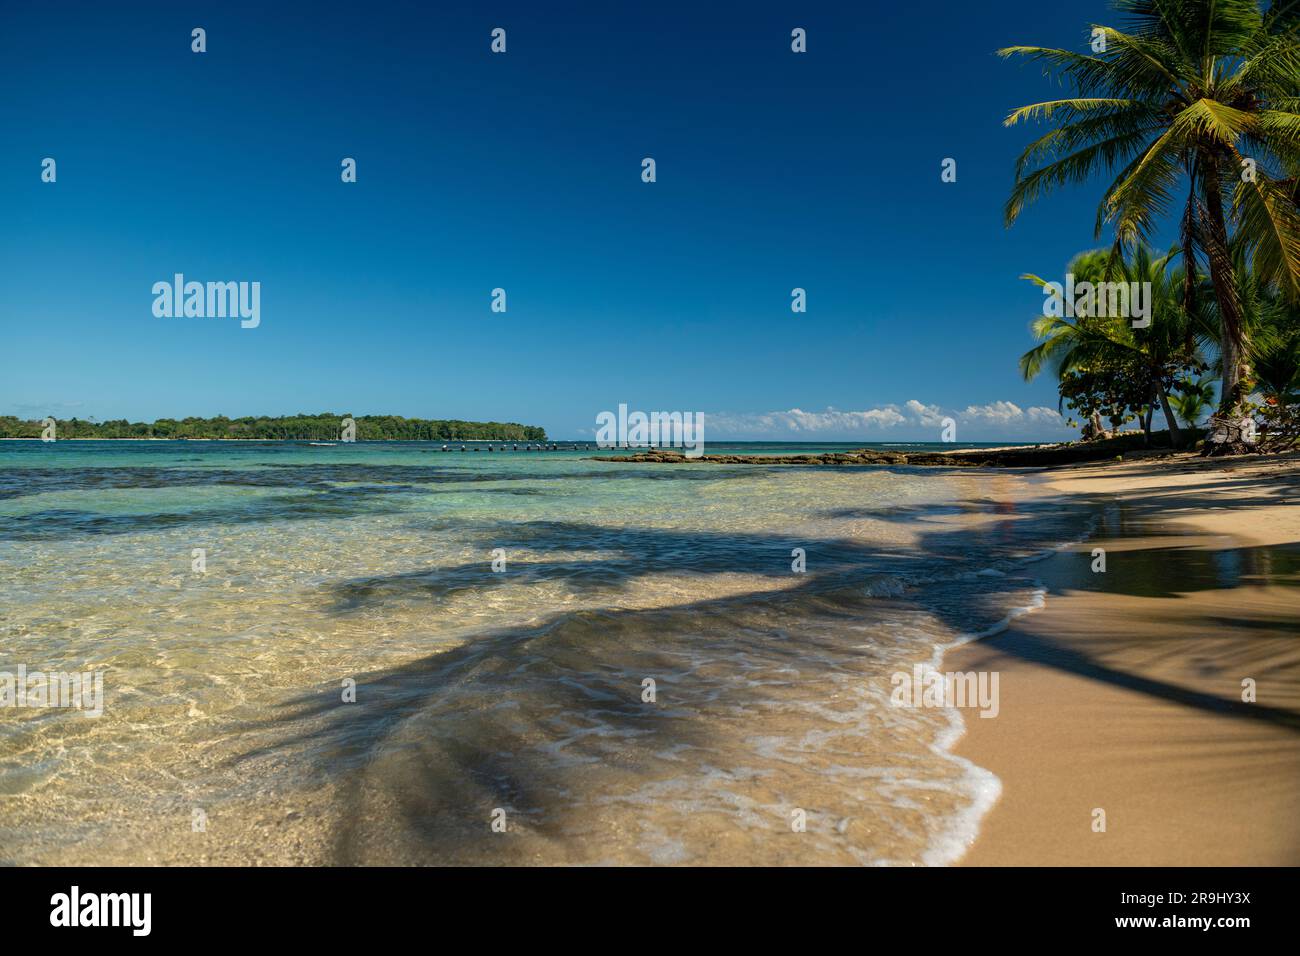 Beach at  Boca del Drago, Bocas del Toro island, Panama - stock photo Stock Photo